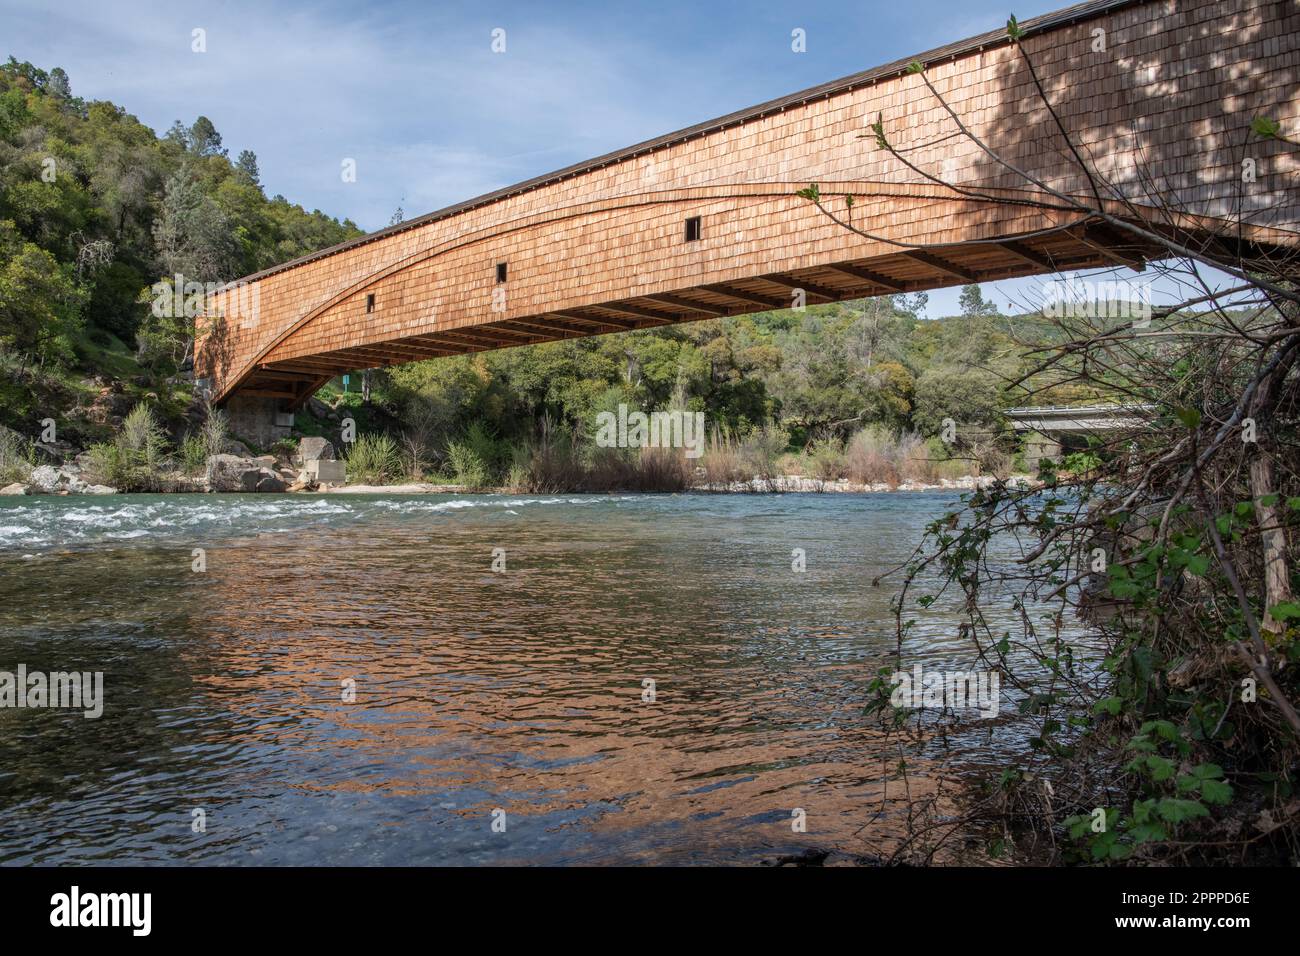 Le pont couvert de Bridgeport est un point de repère historique dans le parc national de South Yuba River, dans le comté du Nevada, en Californie. Le pont antique a été restauré. Banque D'Images